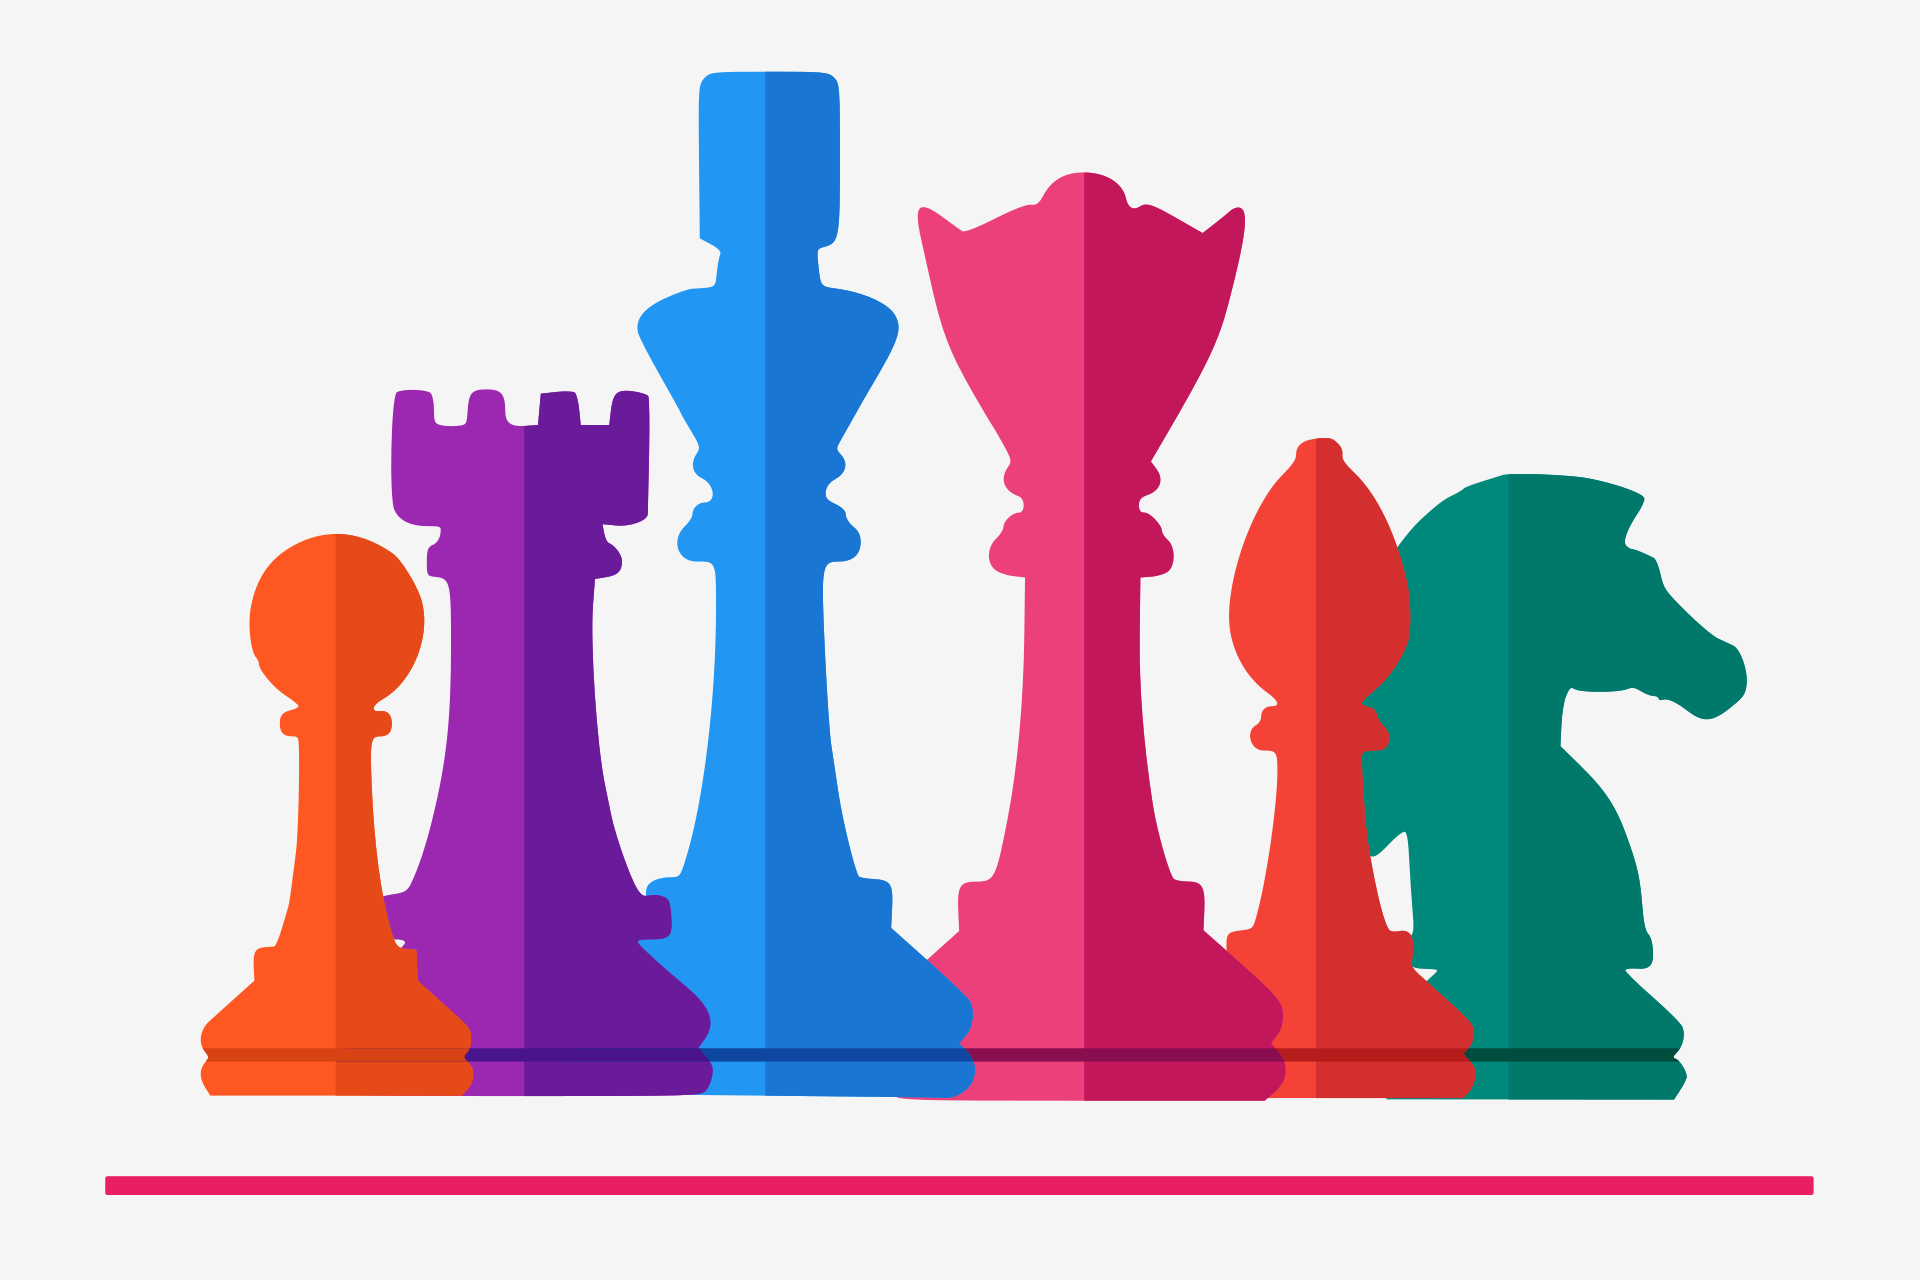 Bunte Schachfiguren: Bauer, Turm, König, Königin, Läufer, Pferd